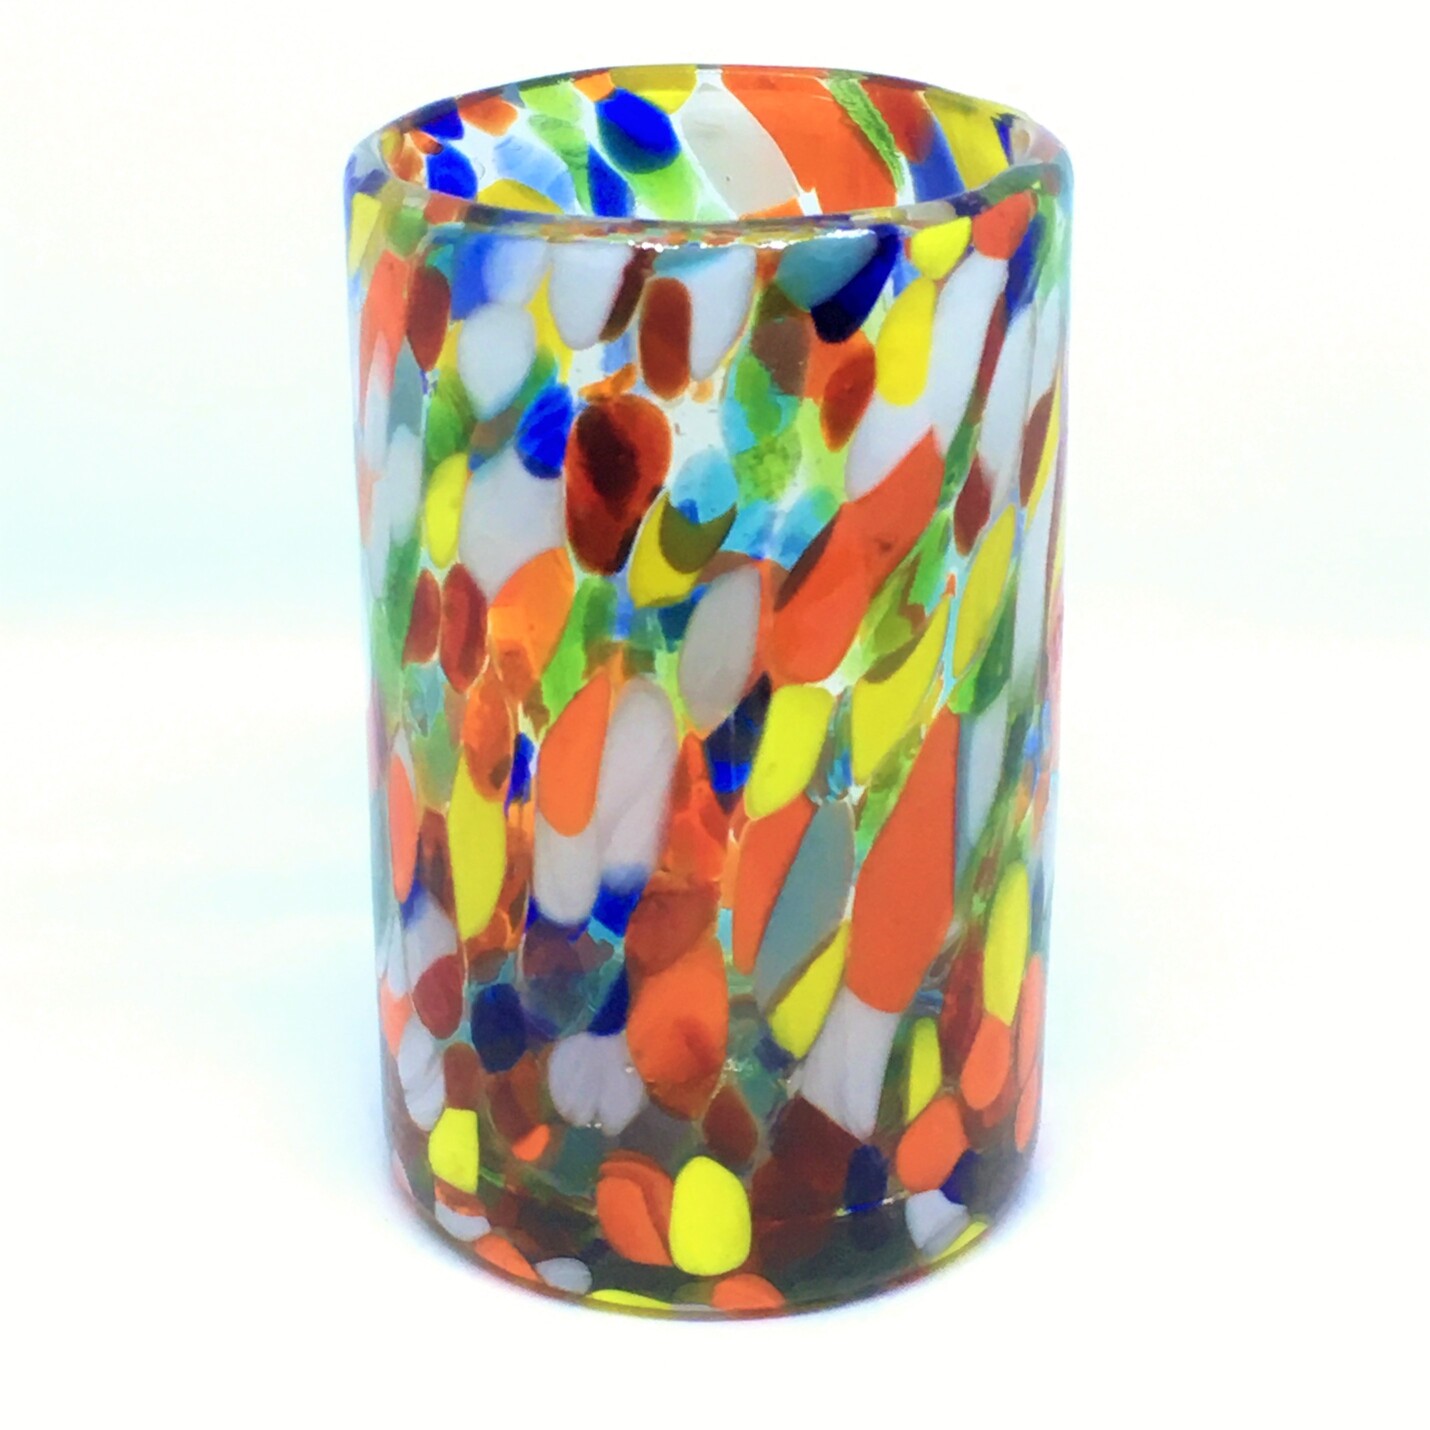 VIDRIO SOPLADO / Juego de 6 vasos grandes 'Confeti Carnaval' / Deje entrar a la primavera en su casa con éste colorido juego de vasos. El decorado con vidrio multicolor los hace resaltar en cualquier lugar.